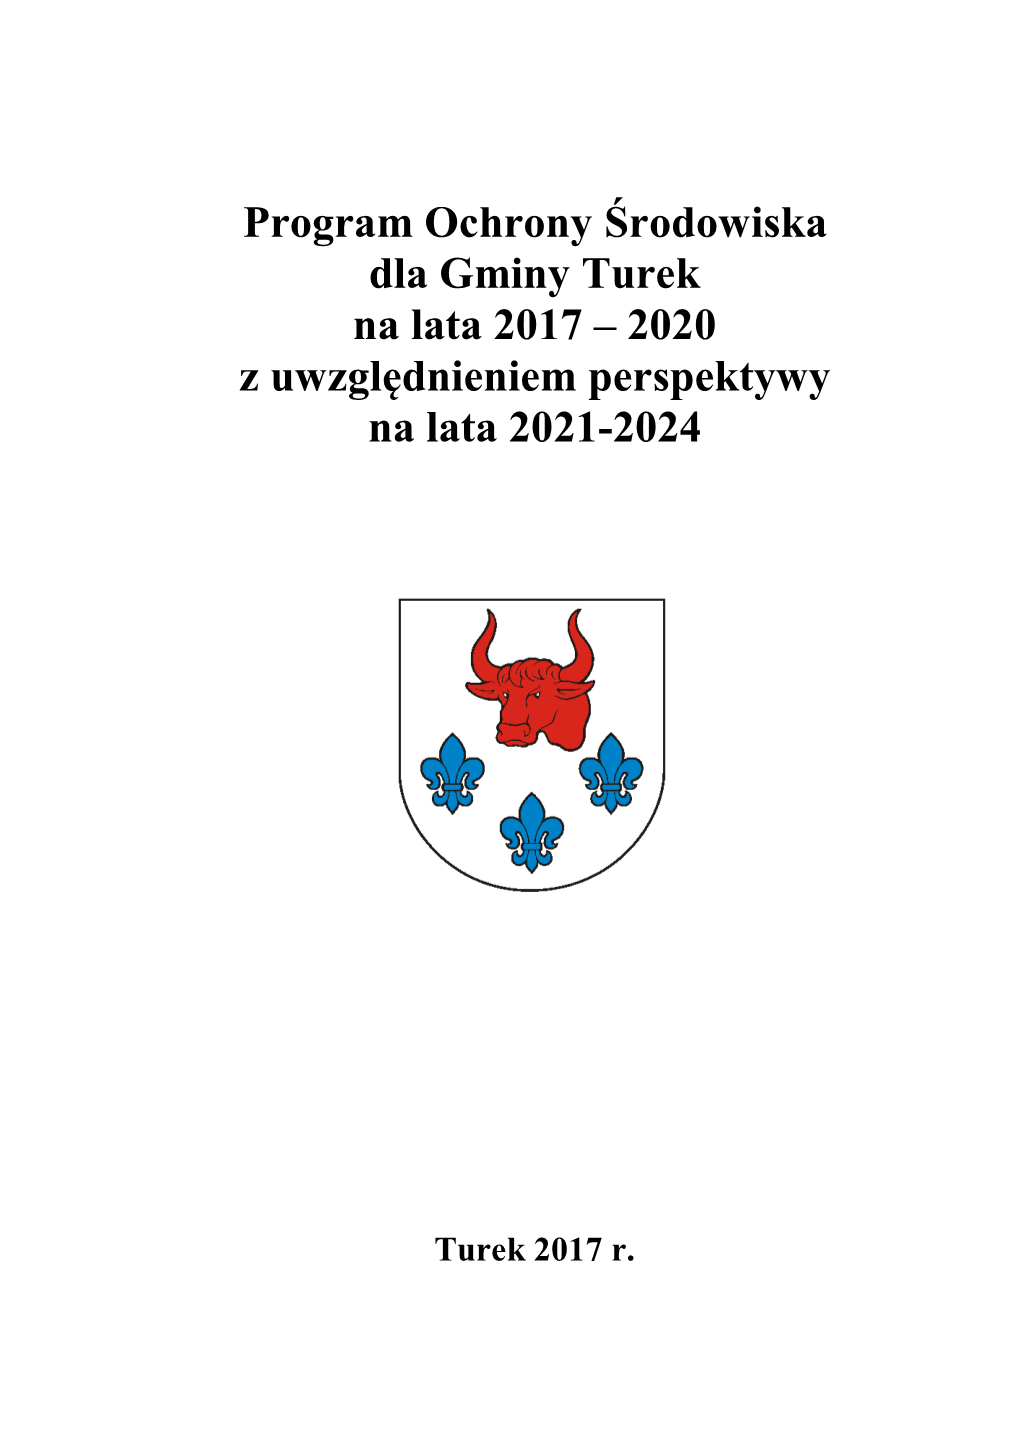 Program Ochrony Środowiska Dla Gminy Turek Na Lata 2017 – 2020 Z Uwzględnieniem Perspektywy Na Lata 2021-2024